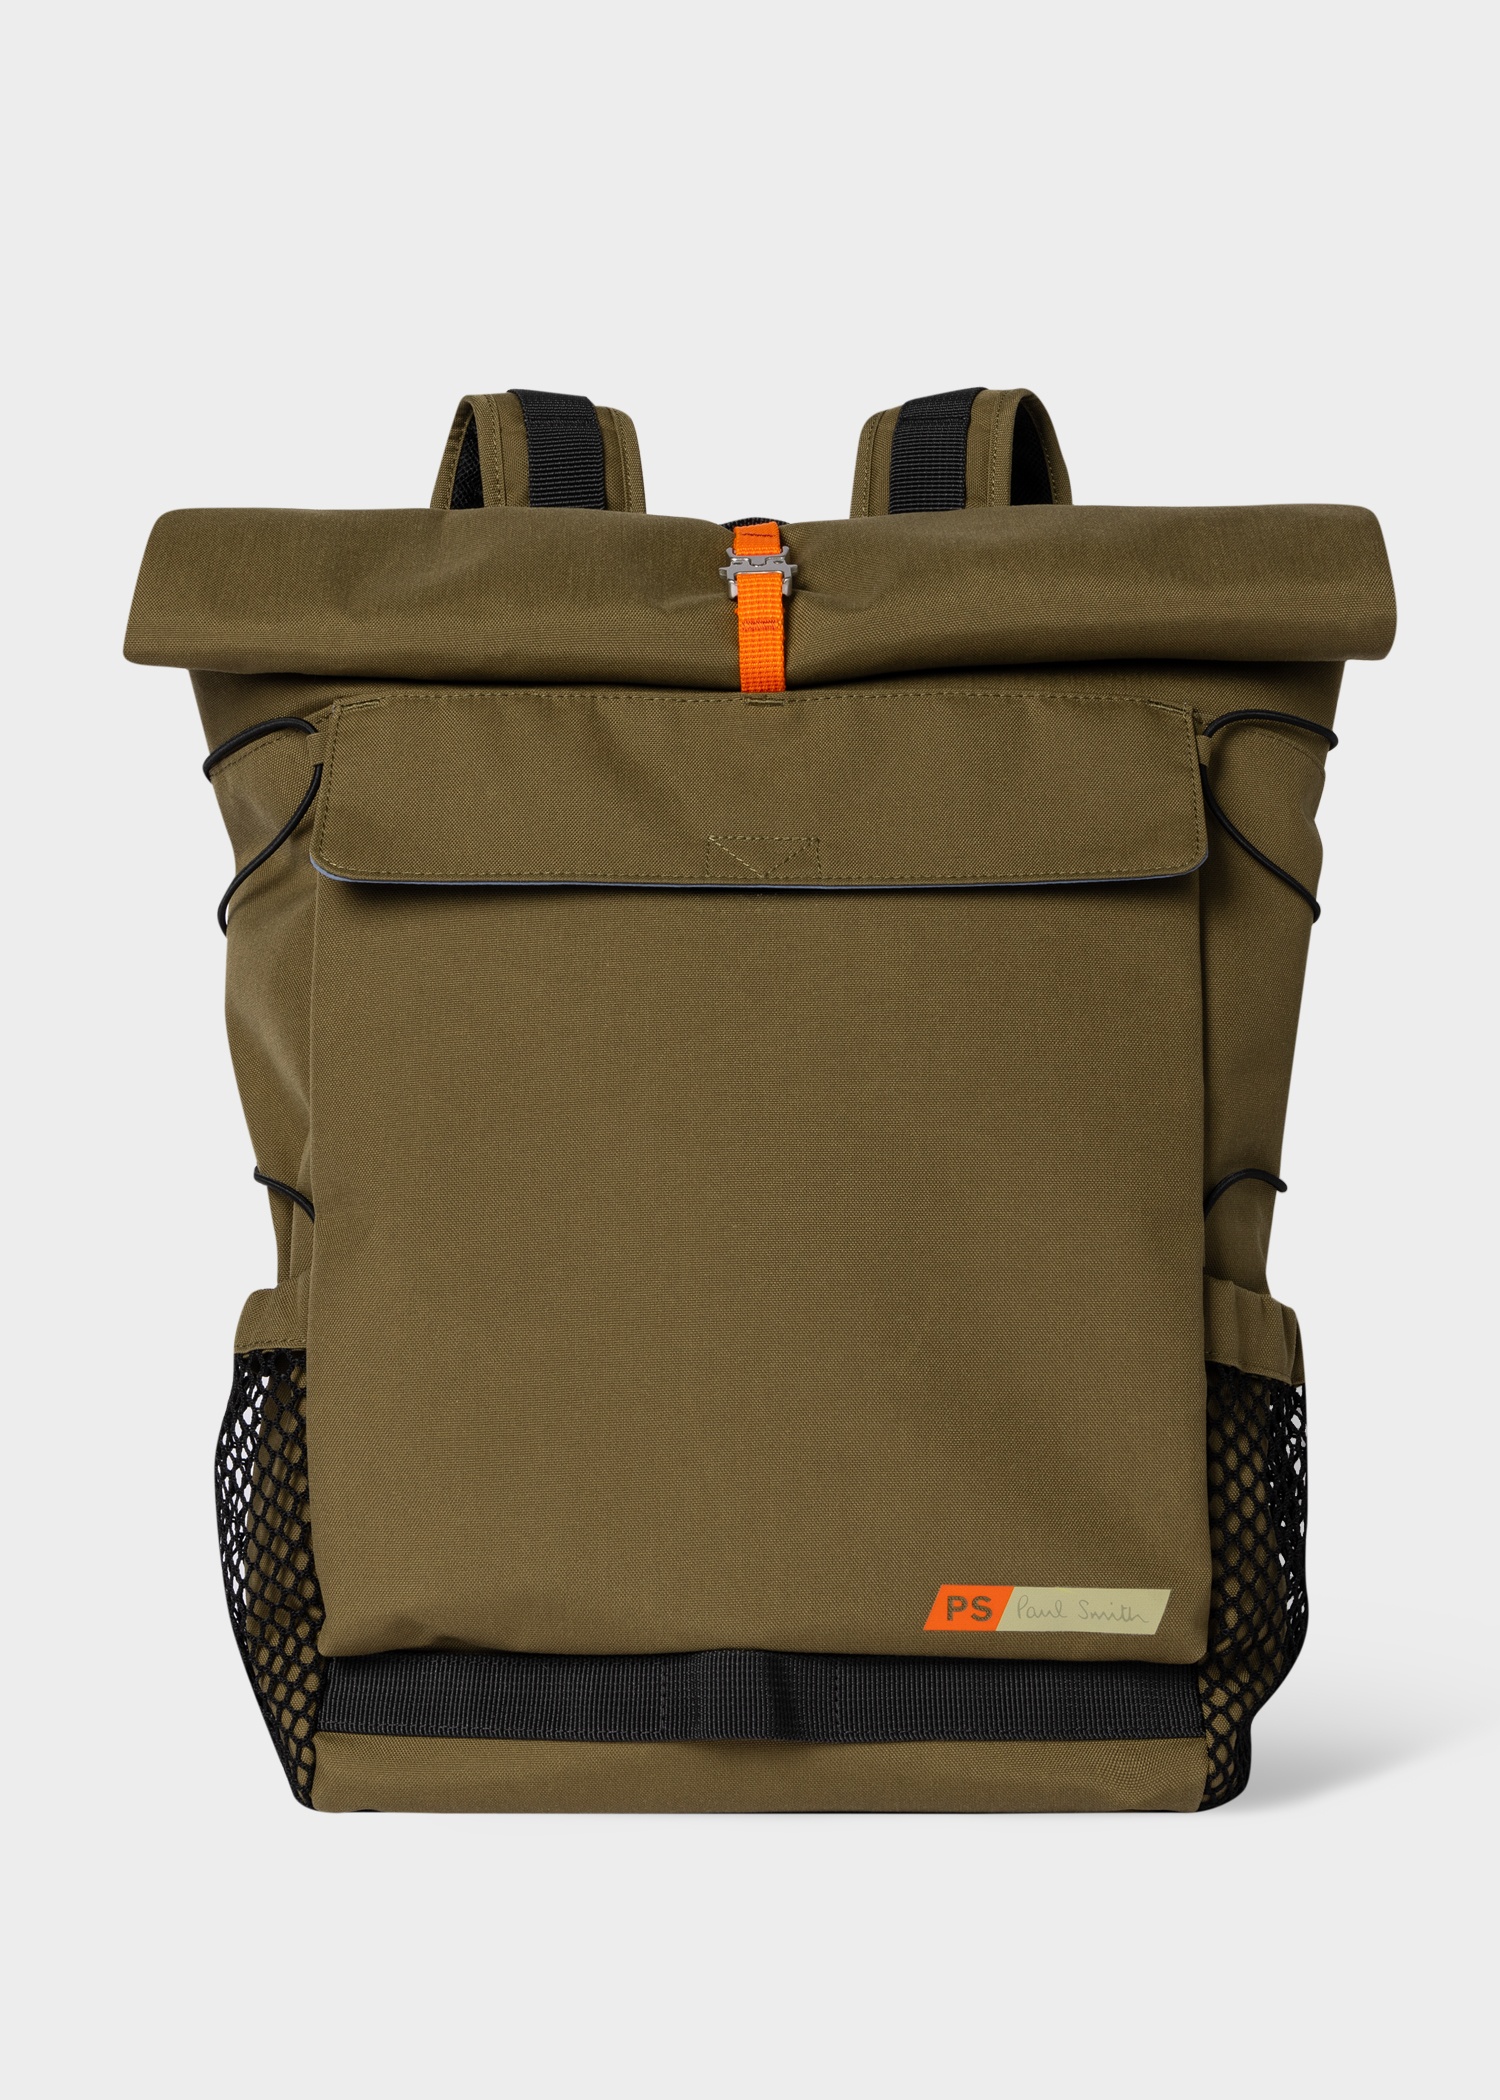 Khaki Nylon Utility Backpack - 1